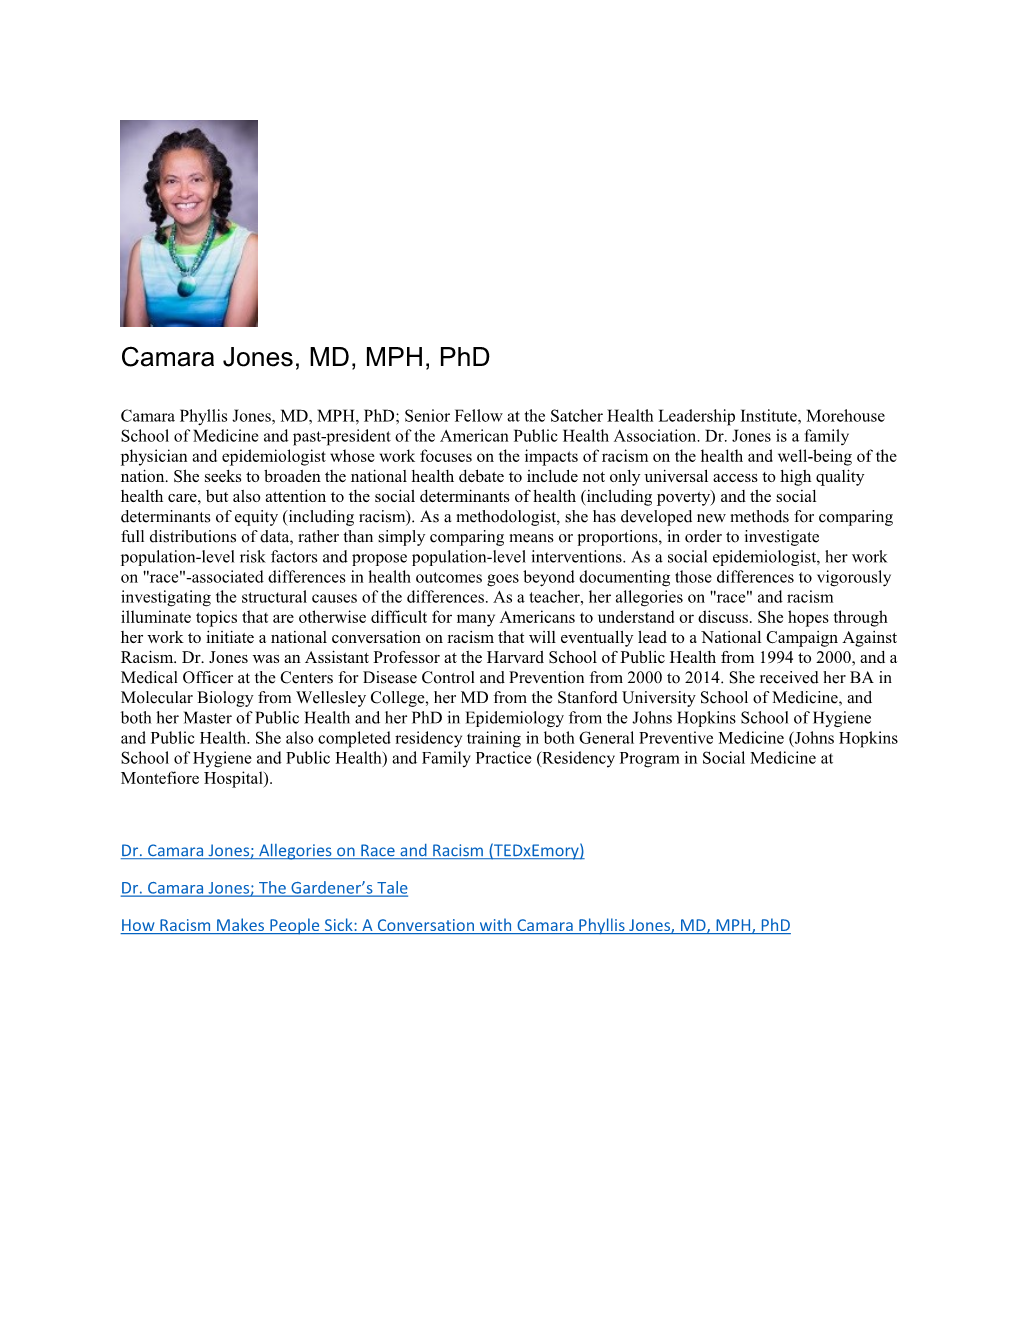 Dr. Camara Jones, MD, MPH